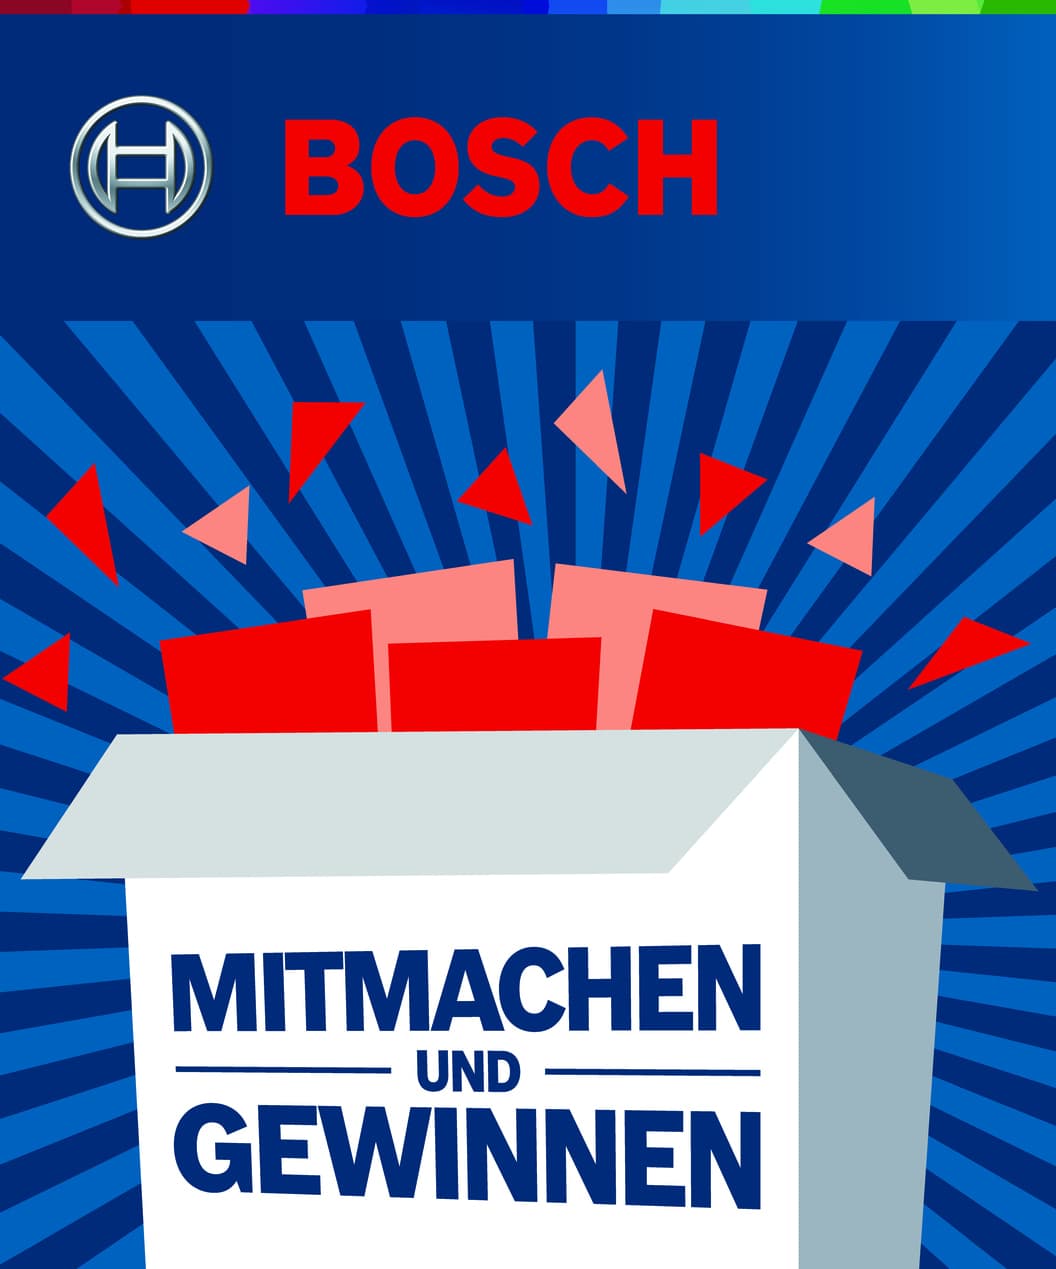 Bosch Gewinnspiel: Jetzt teilnehmen und Preise abräumen